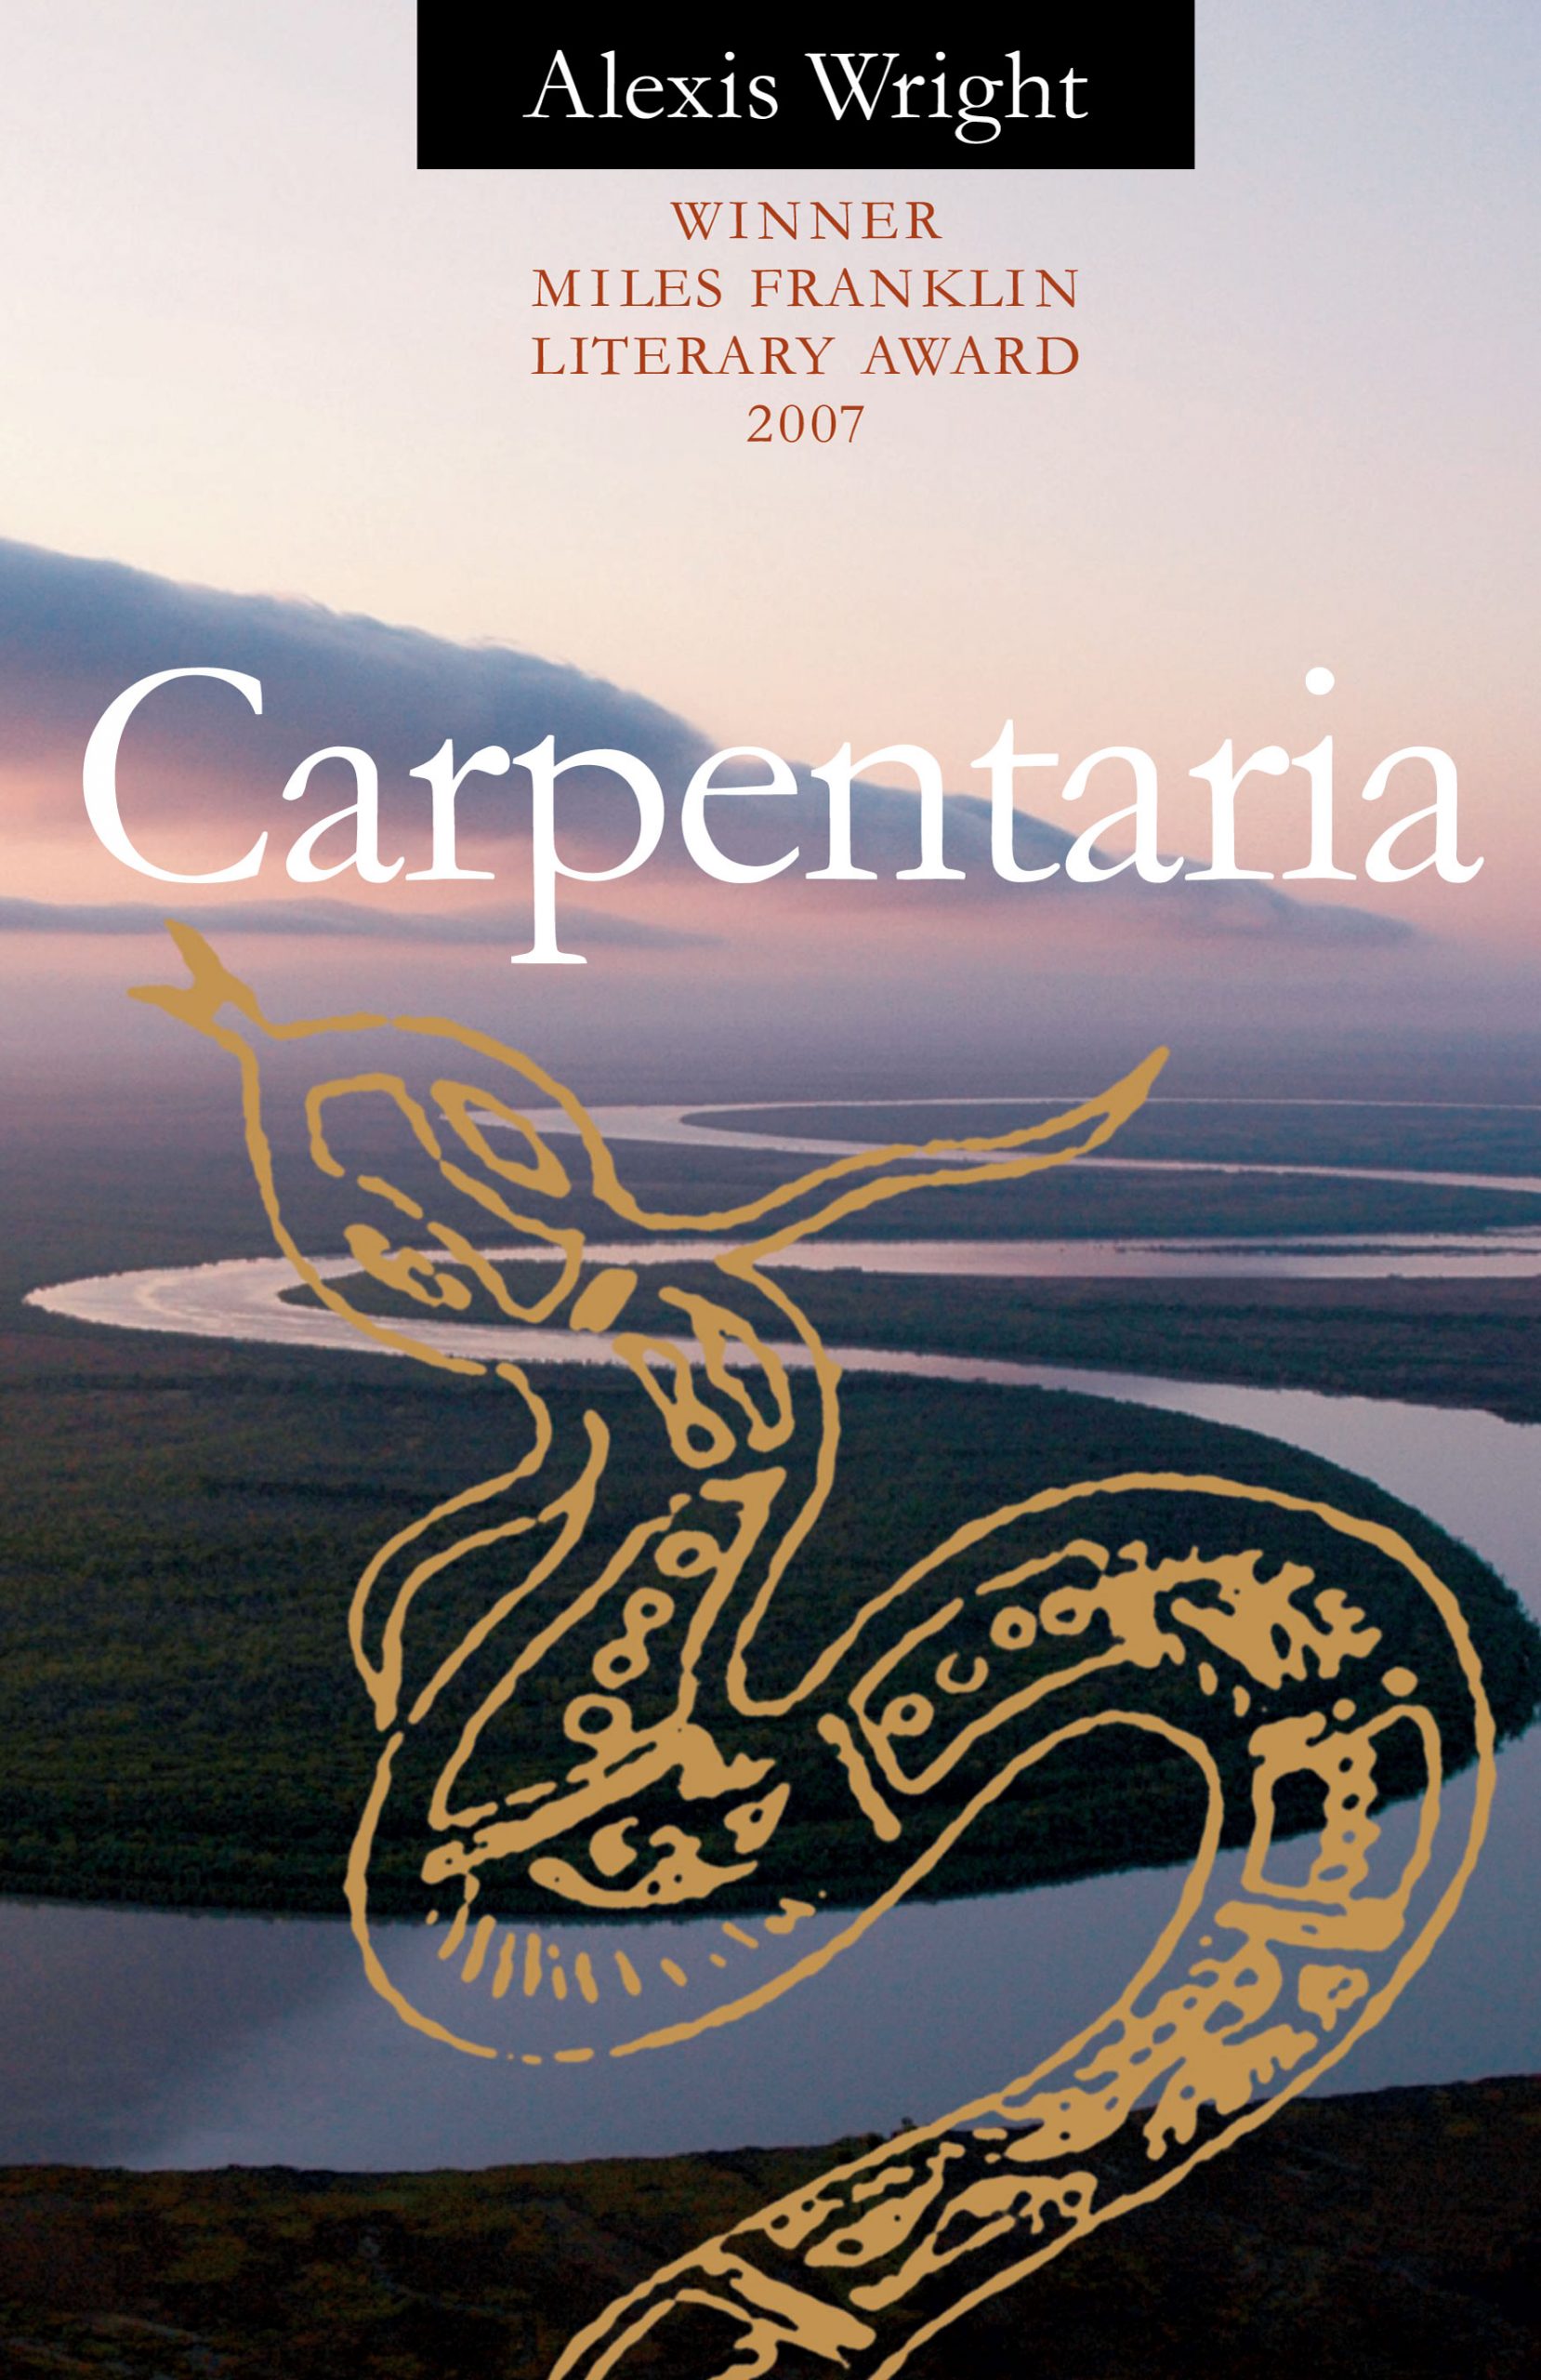 Carpentaria